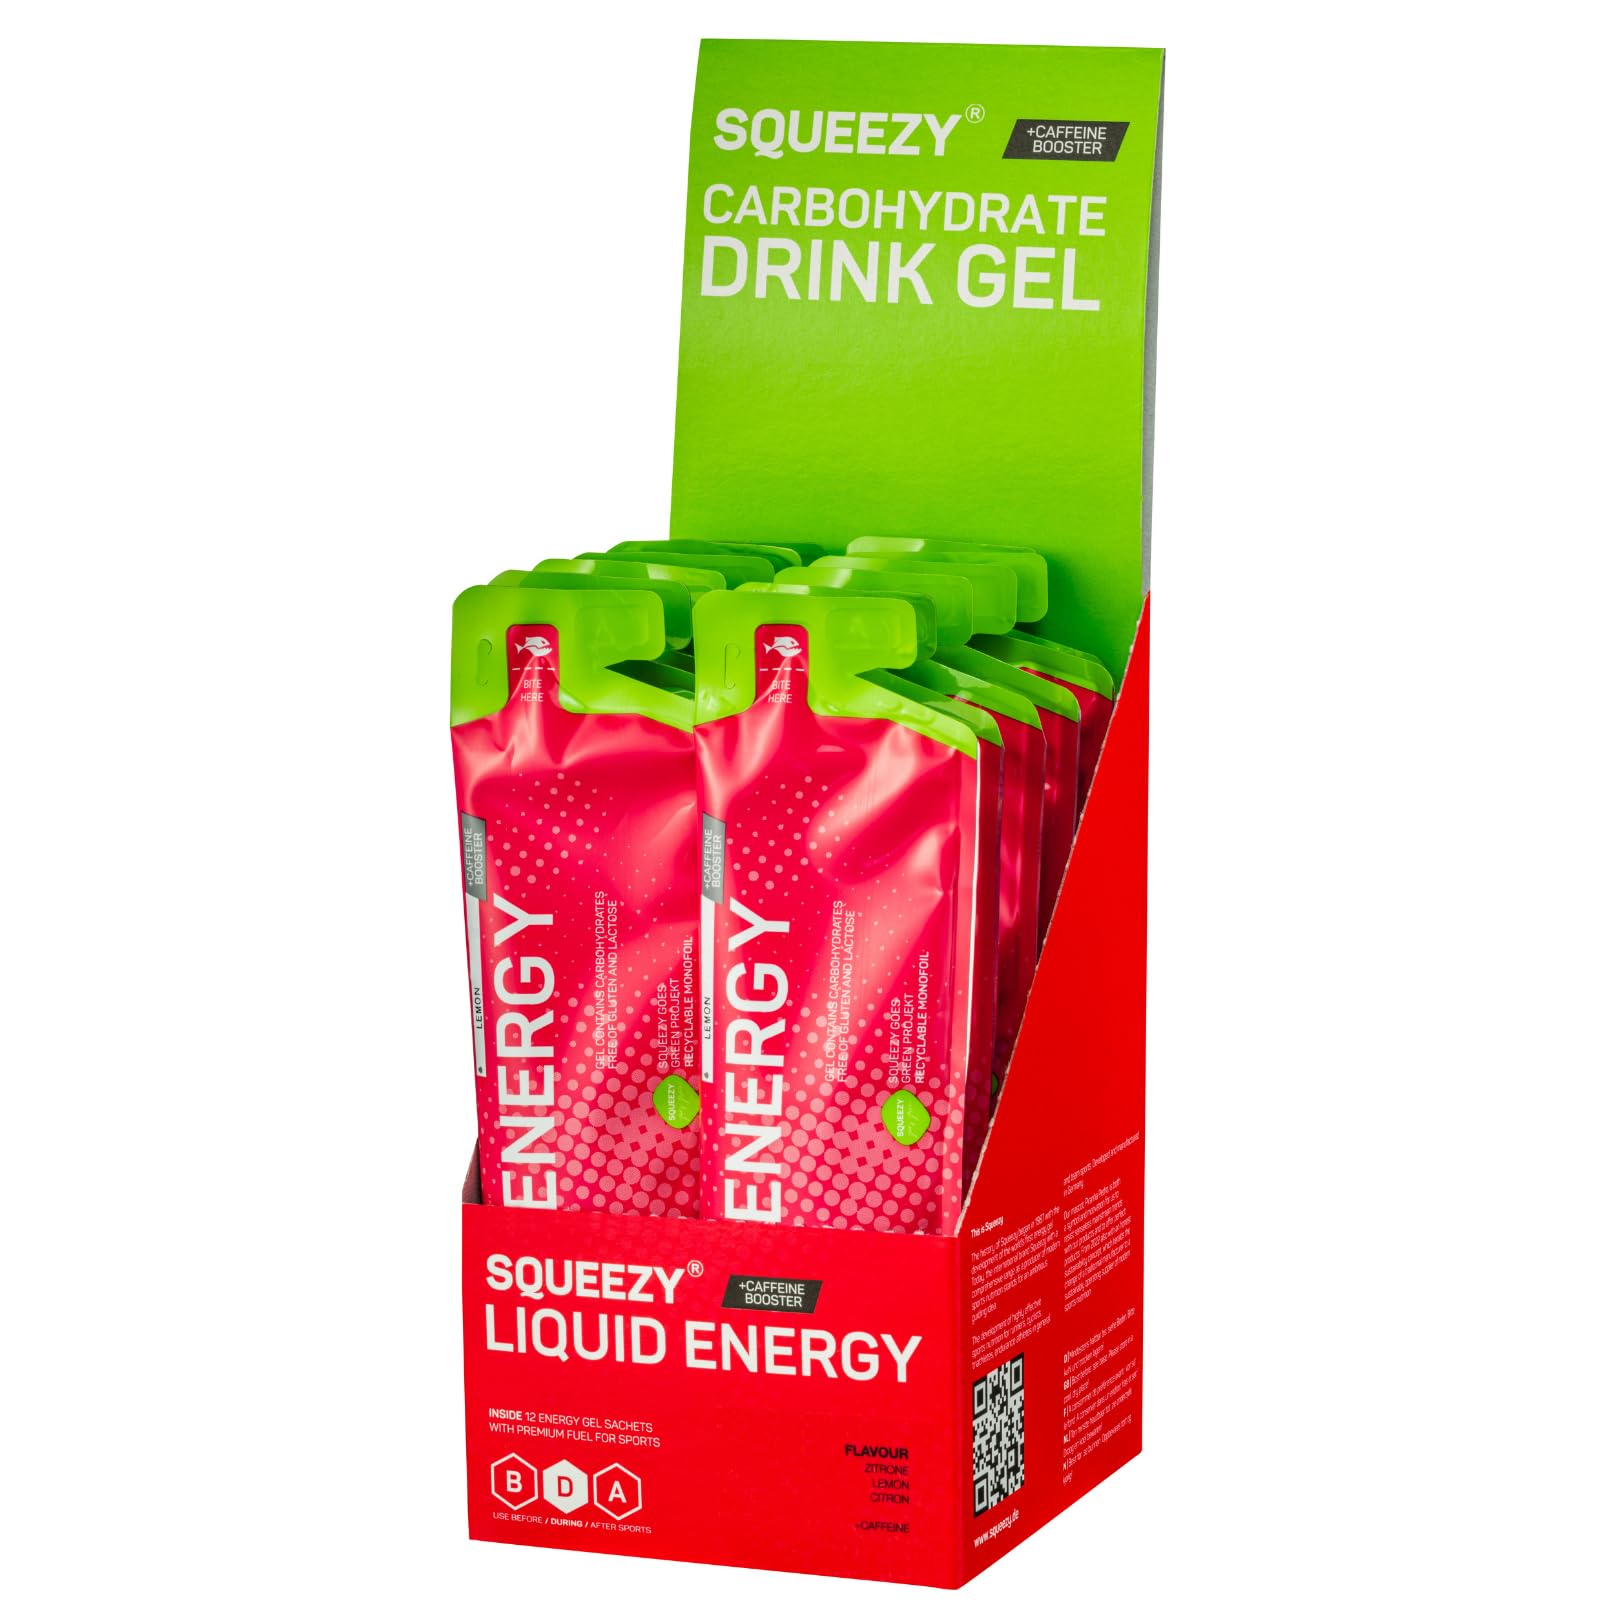 Squeezy Liquid Energy (Zitrone & Koffein) 12er Pack - Sport Energy Gel mit erhöhtem Wasseranteil für schnelle & dauerhafte Energie bei maximaler Verträglichkeit beim Marathon & Co. - ohne Nachtrinken